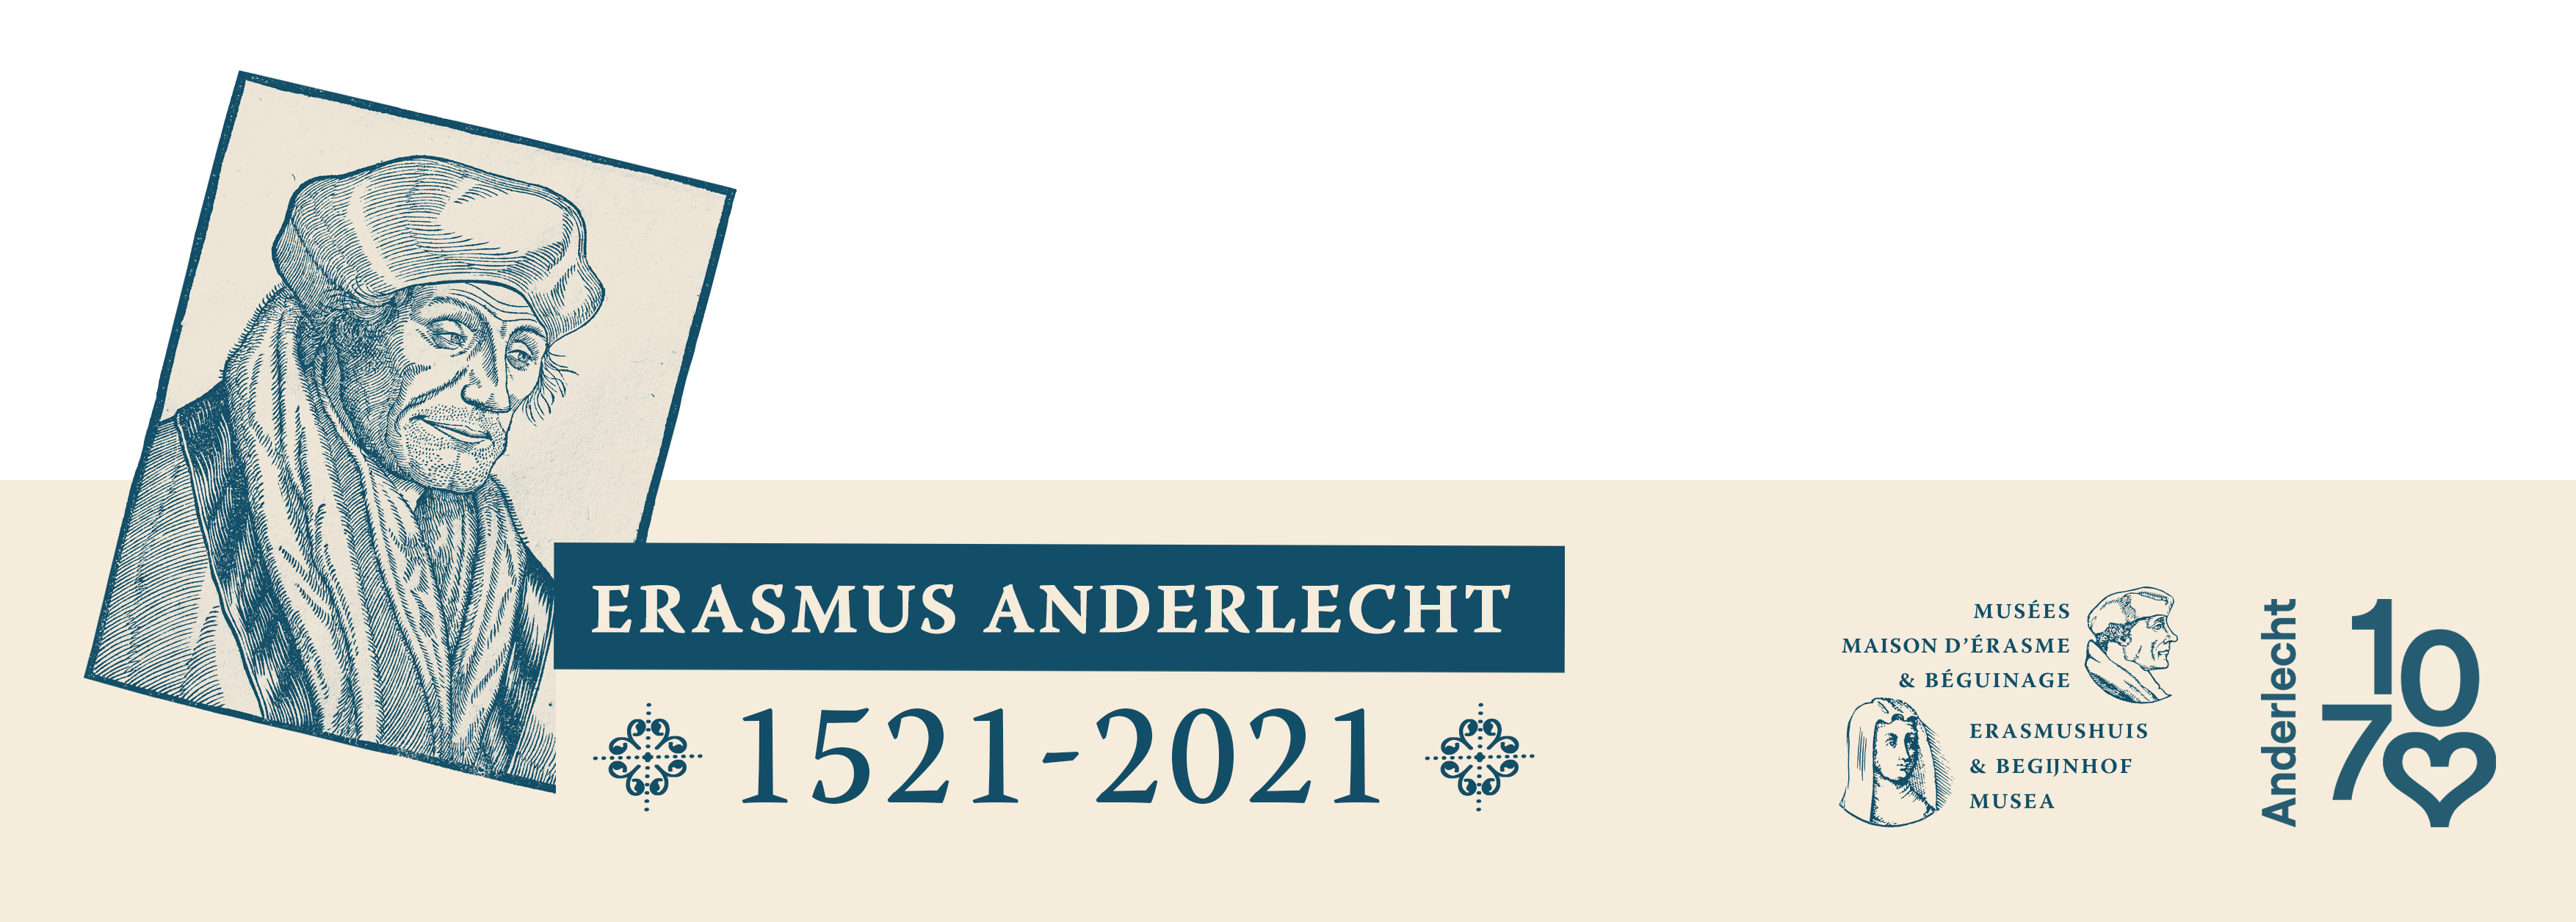 Vignette Erasmus Anderlecht 1521-2021